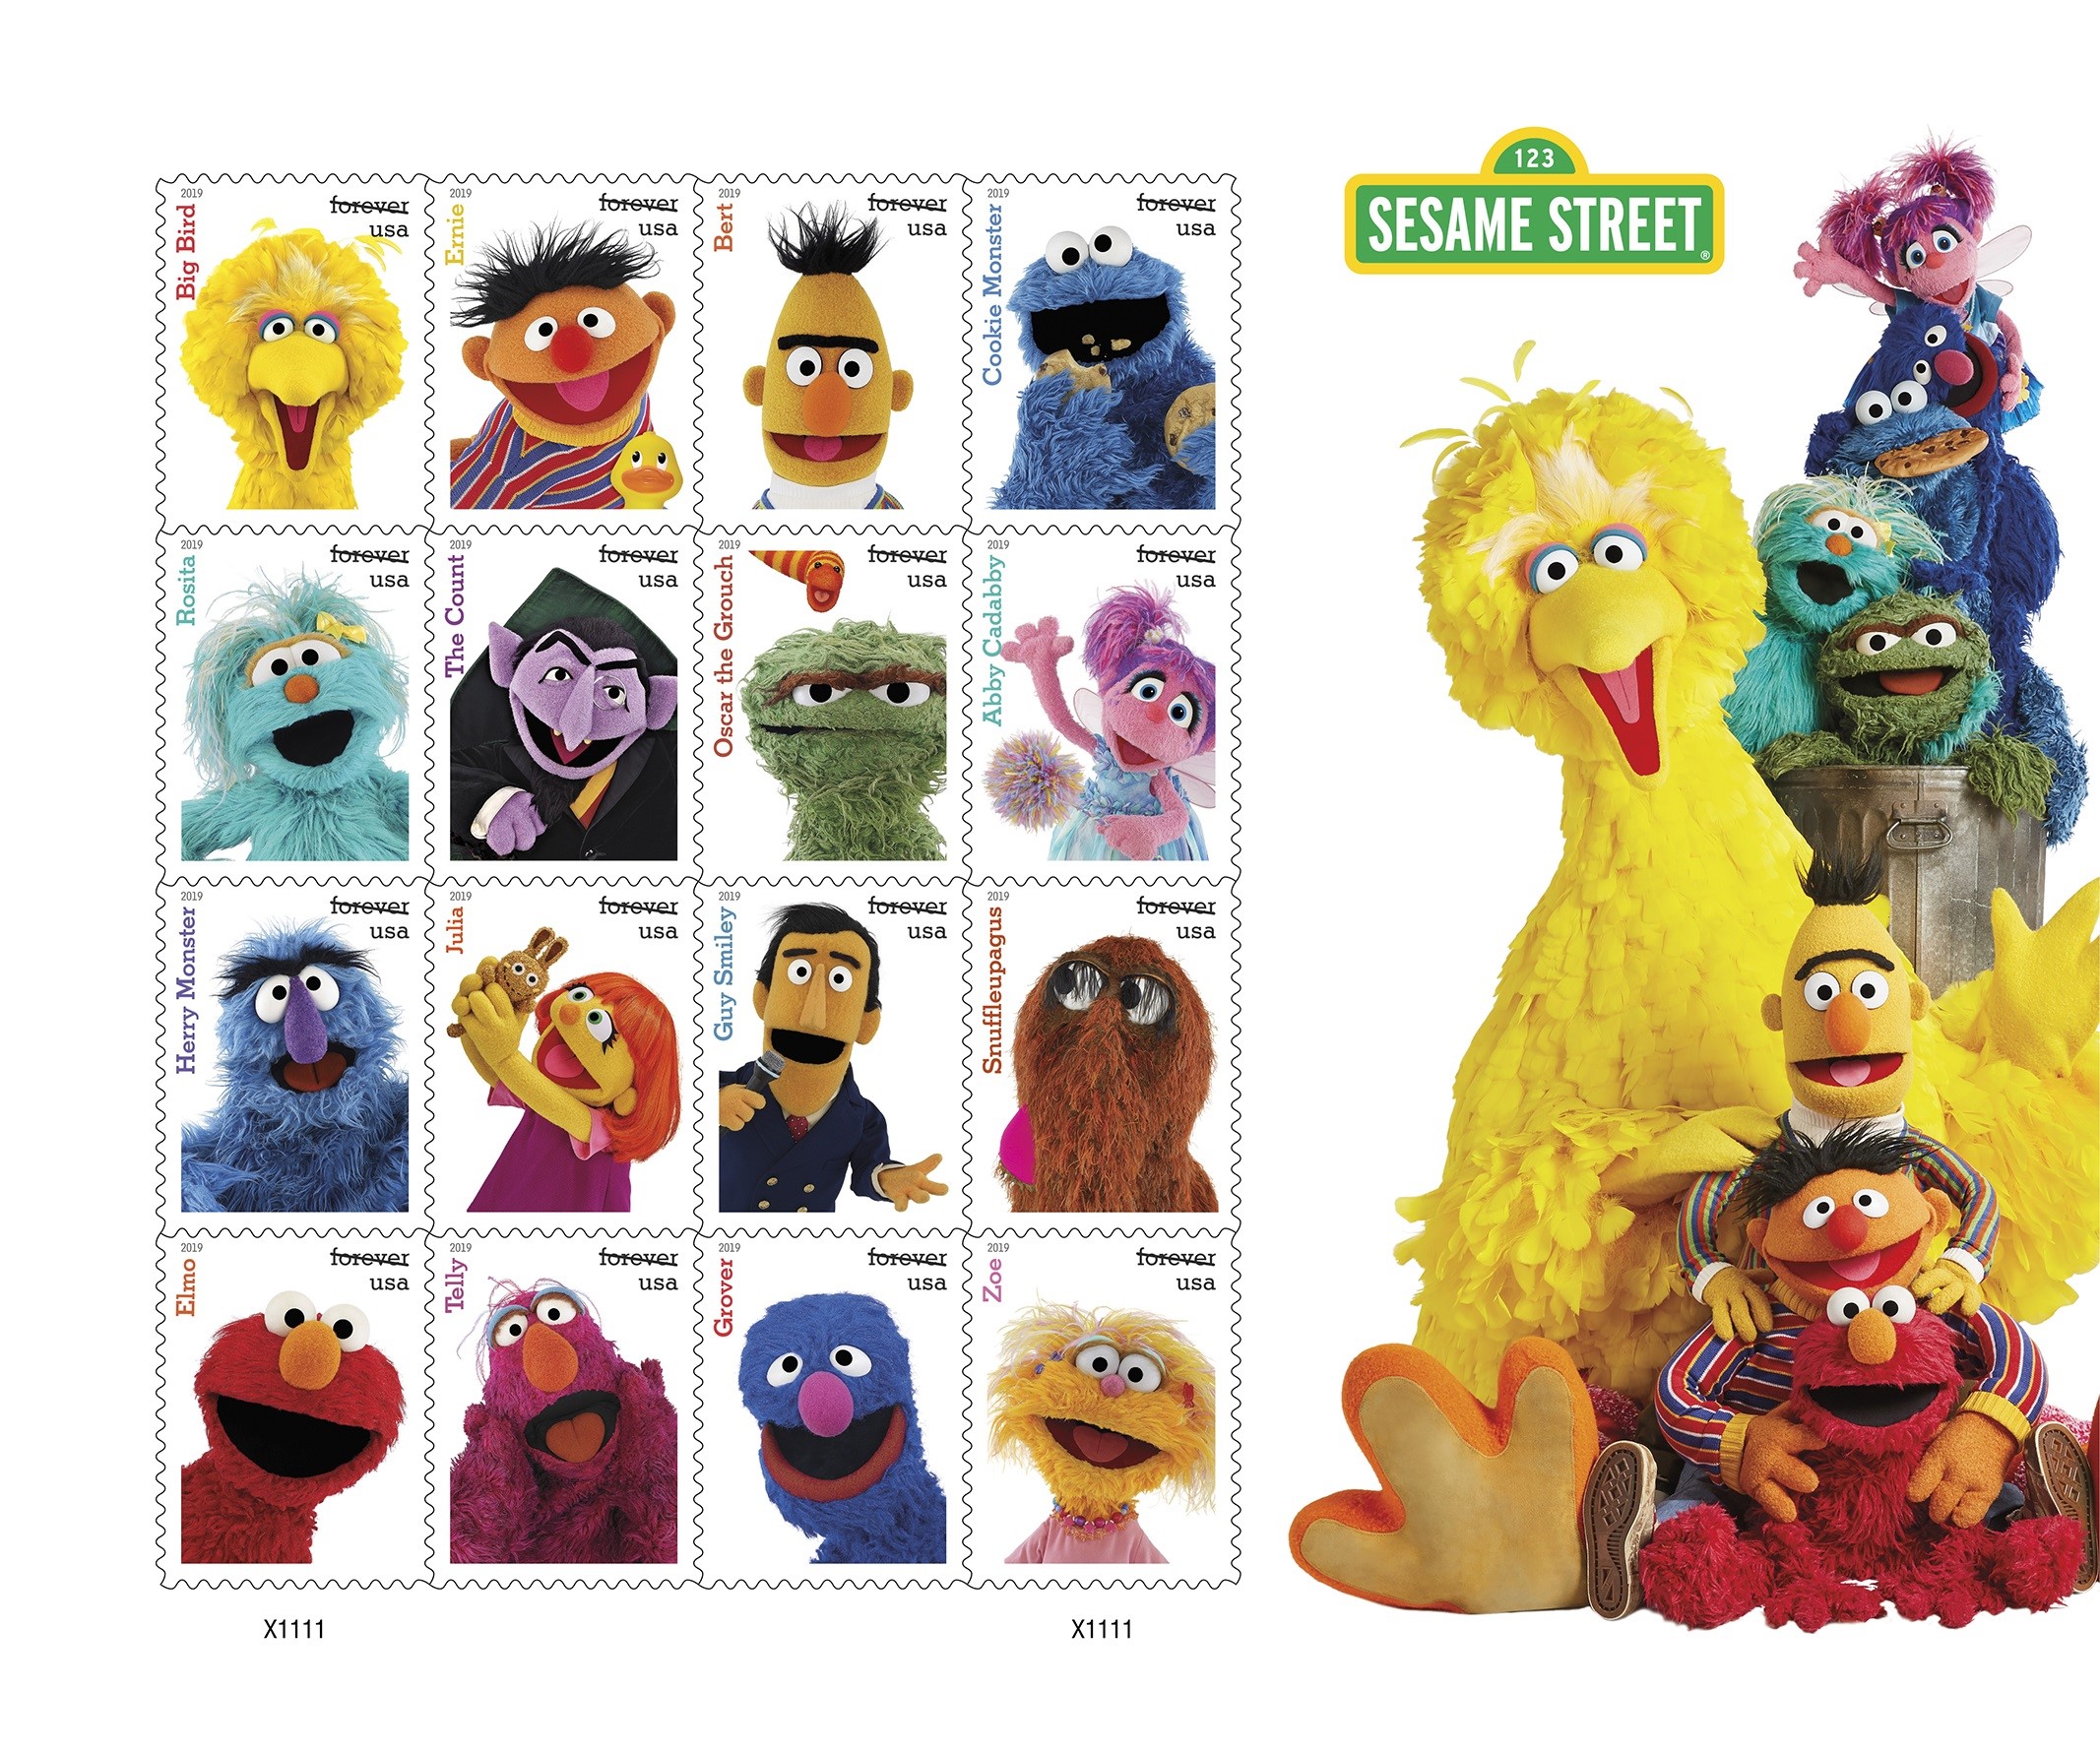 Sesame Street forever stamp